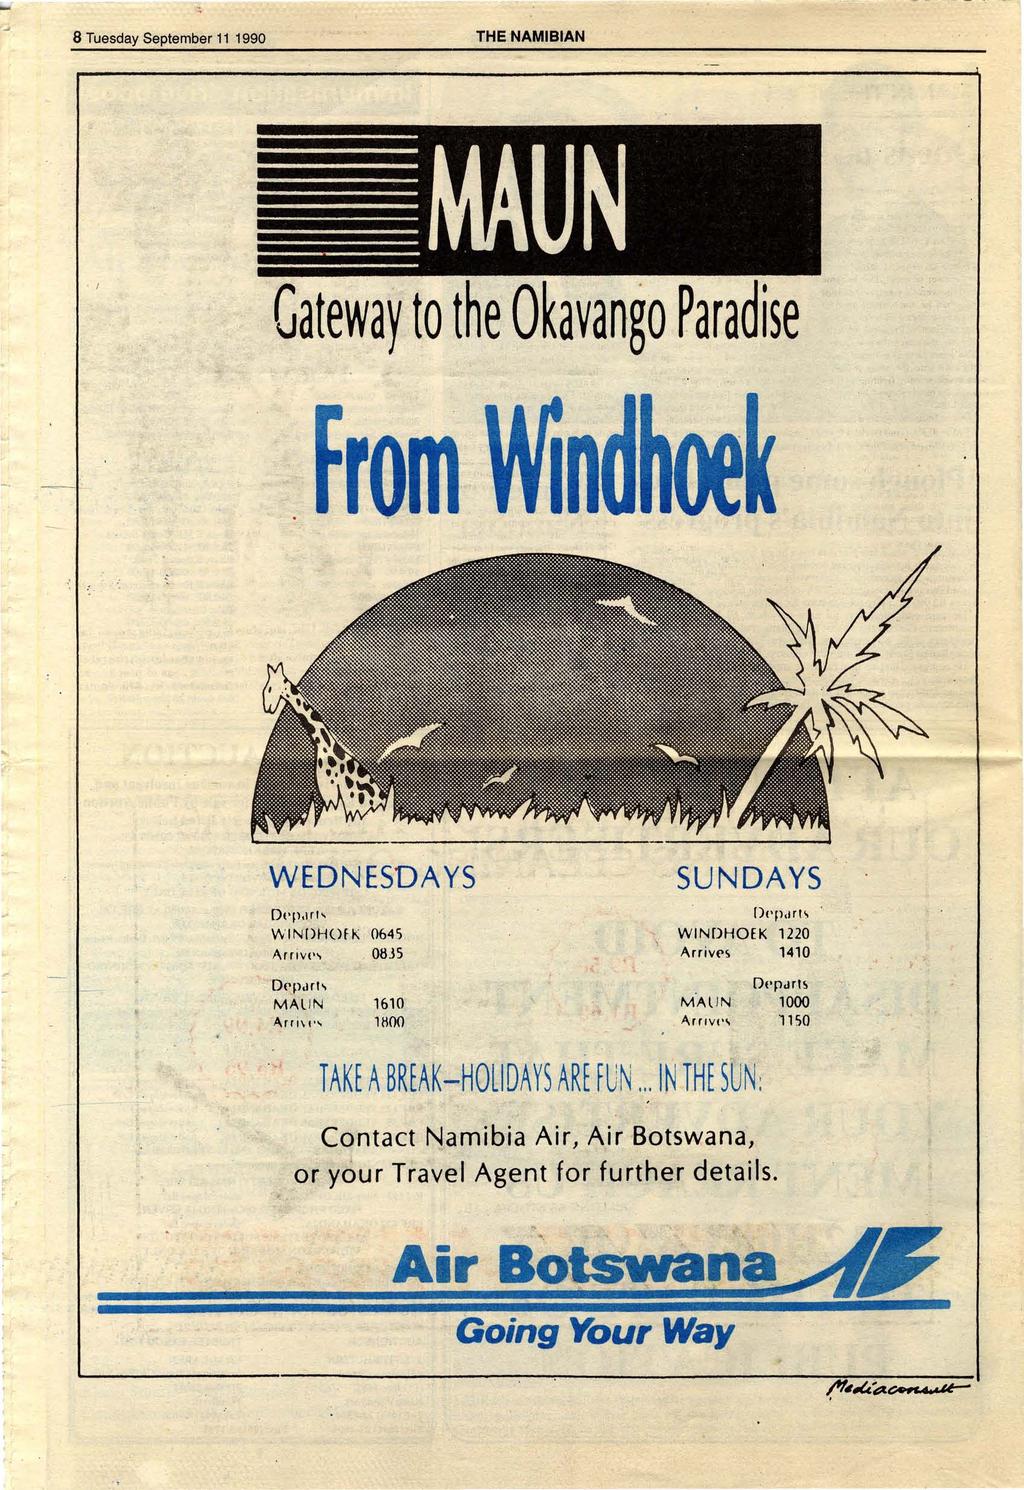 8 Tuesday September 11 1990 THE 'NAMIBIAN. I Gateway to the OKavango Paradise. - '......,., WEDNESDAYS Dt'p,ln, \tv I N:[)HOF K 0645 Arrivp,, 0835..,.,~ SUNDAYS [)pp.h!i,. WINDHOEK 1220 Arriv('s 1410.